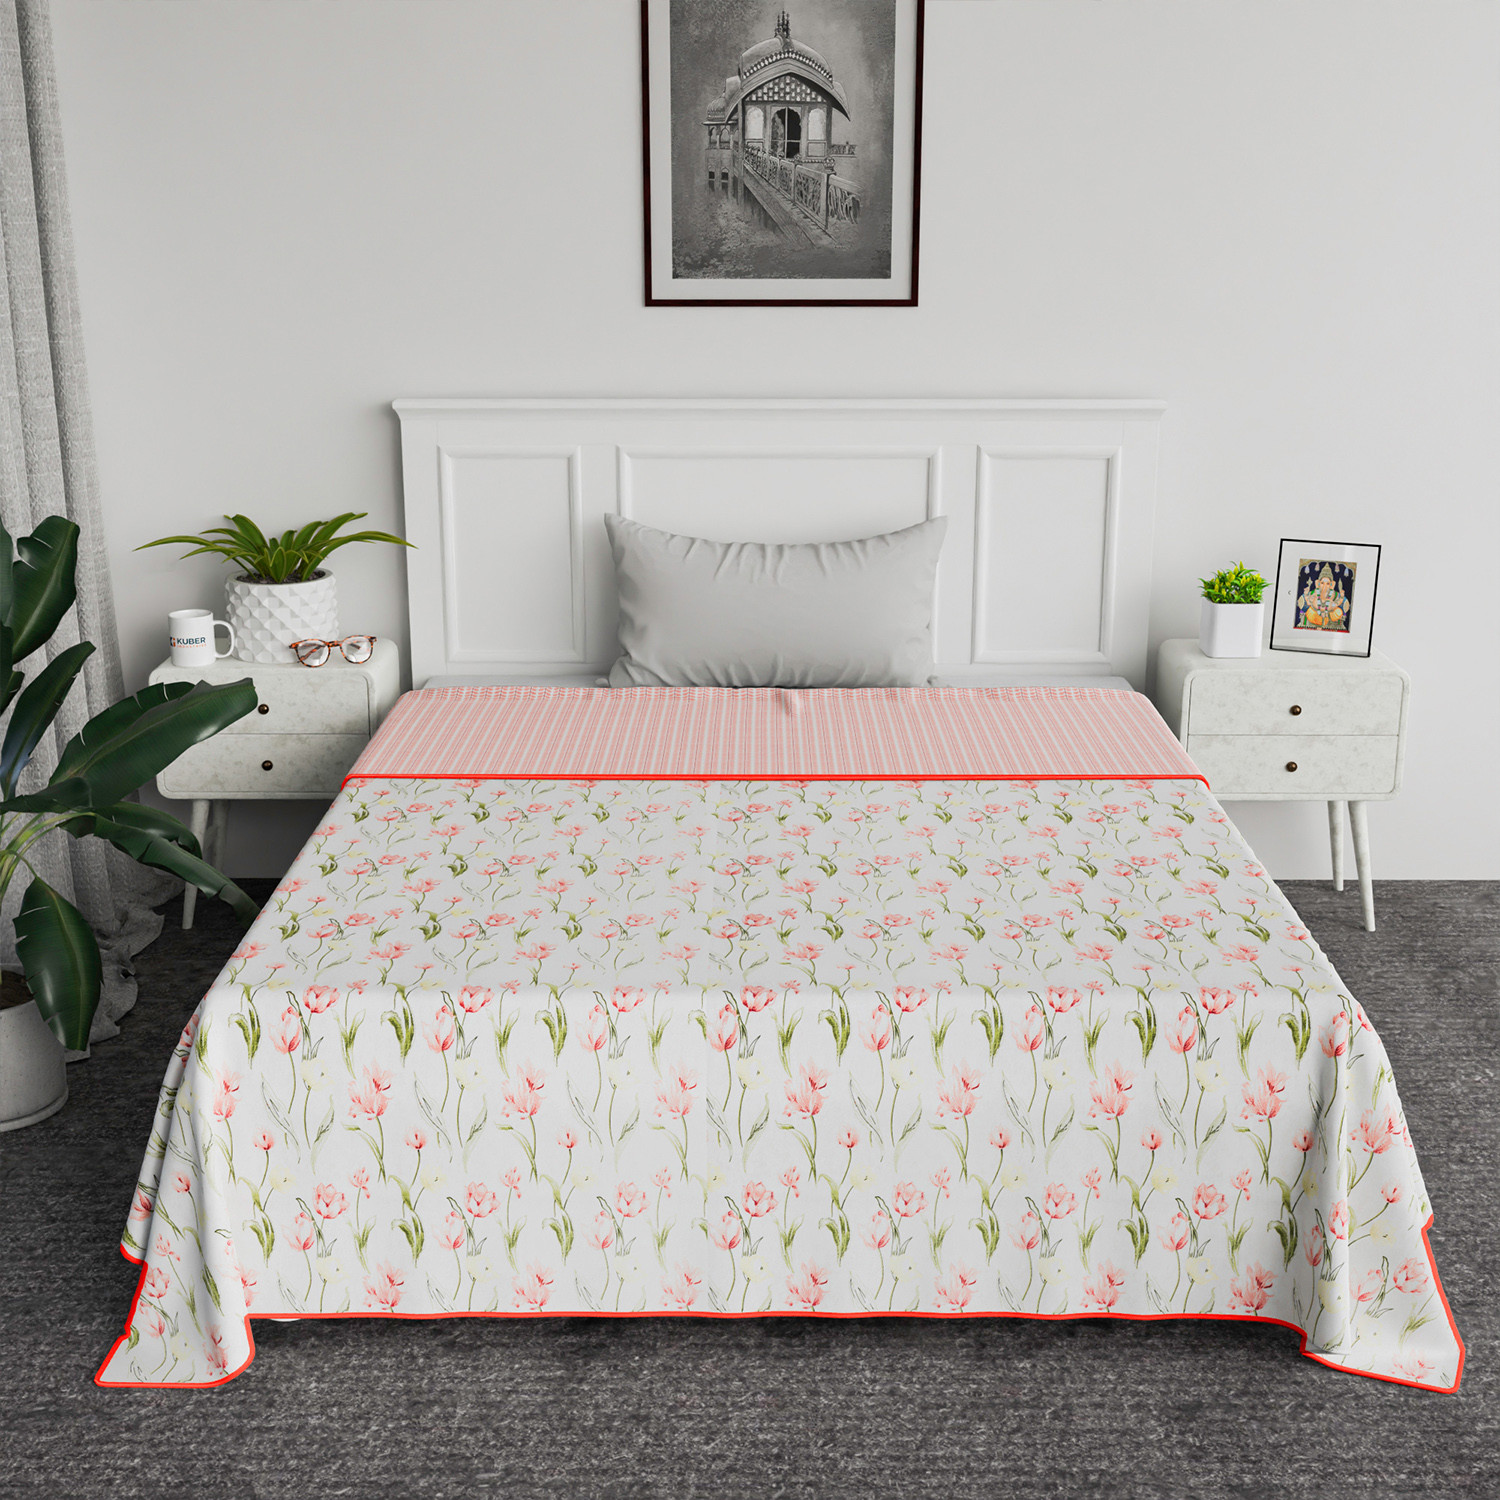 Kuber Industries Blanket | Cotton Single Bed Dohar | Blanket For Home | Reversible AC Blanket For Travelling | Blanket For Summer | Blanket For Winters | Red Flower | White